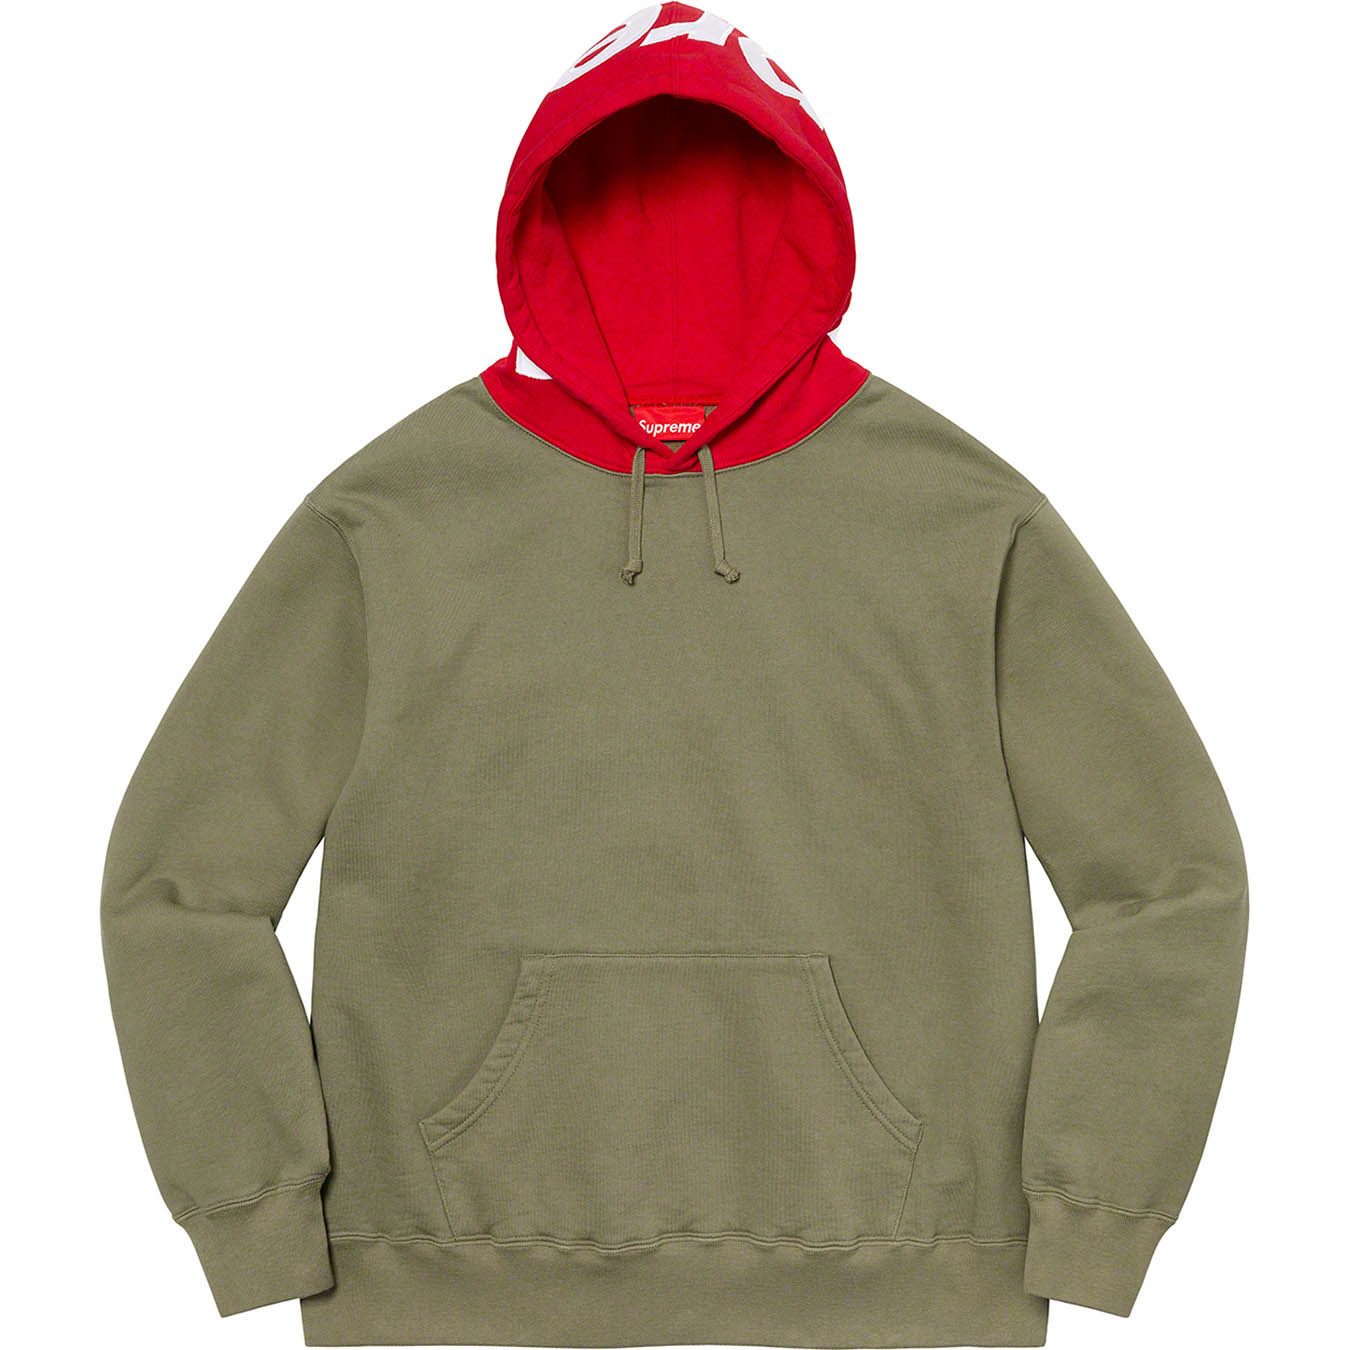 Contrast Hooded Sweatshirt | Supreme 21fw